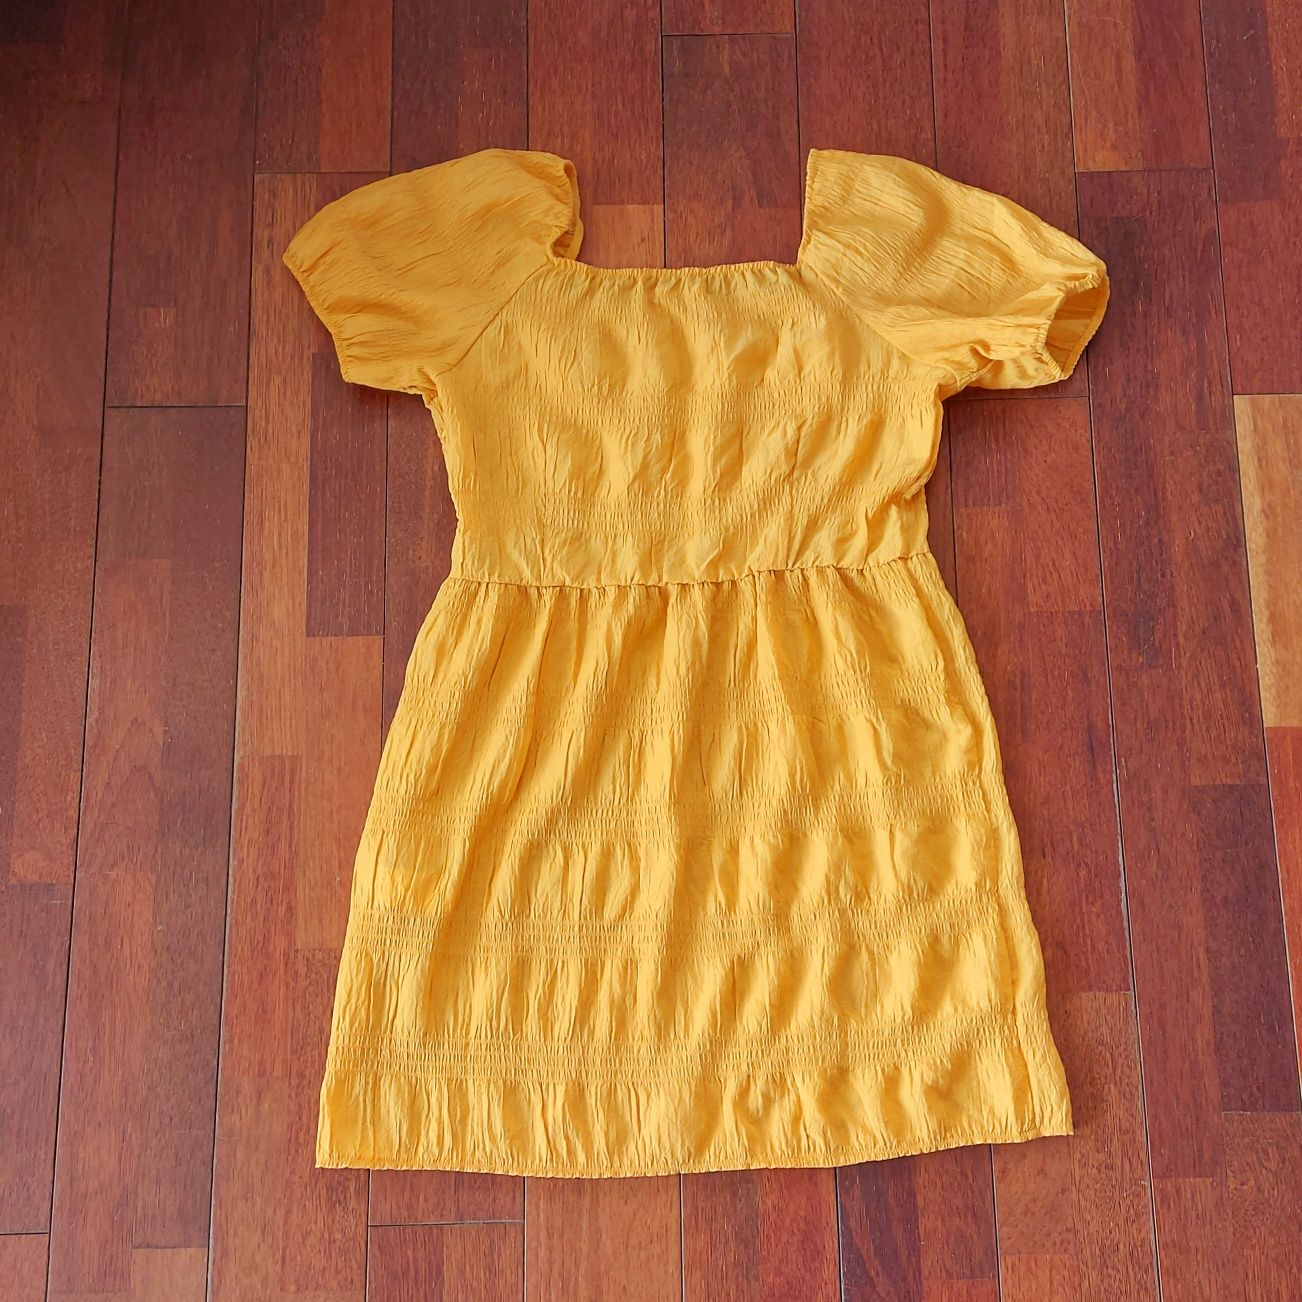 Żółto/pomarańczowa sukienka